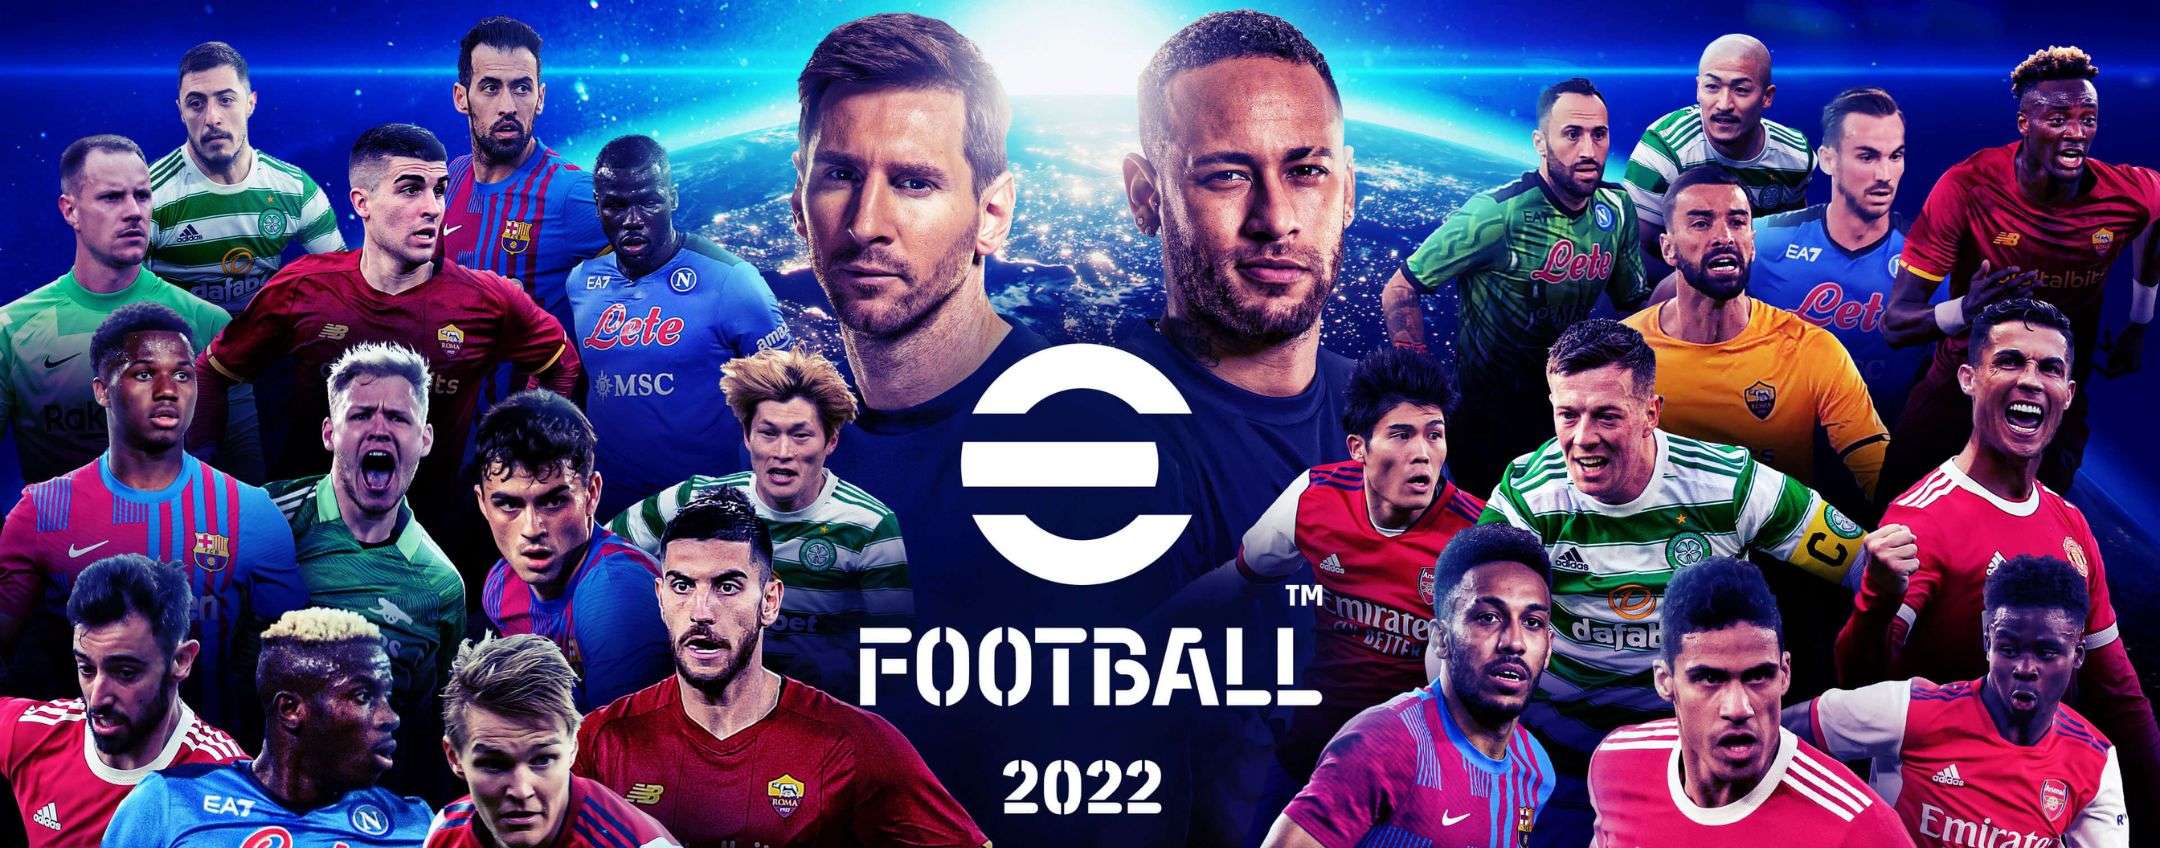 eFootball 2023